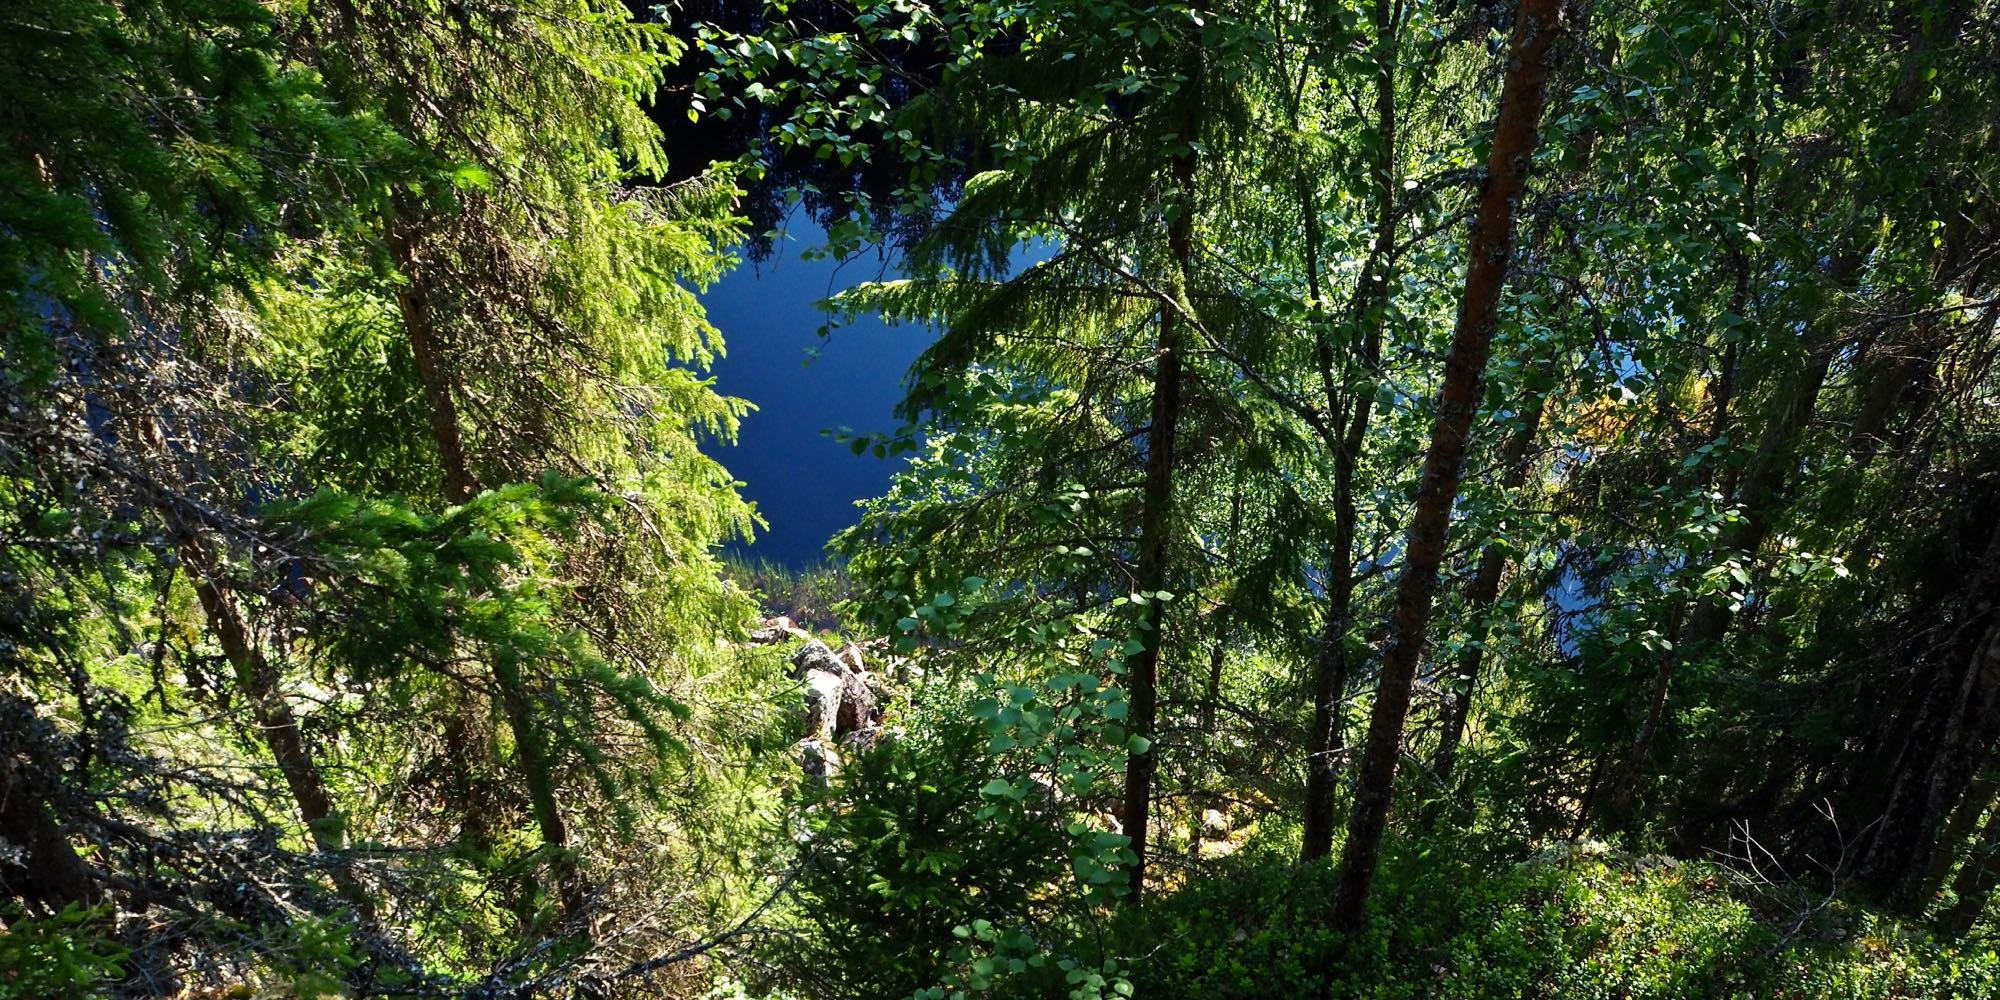 Korkean kallion päältä otetussa kuvassa näkyy vettä alhaalla puiden välissä. 